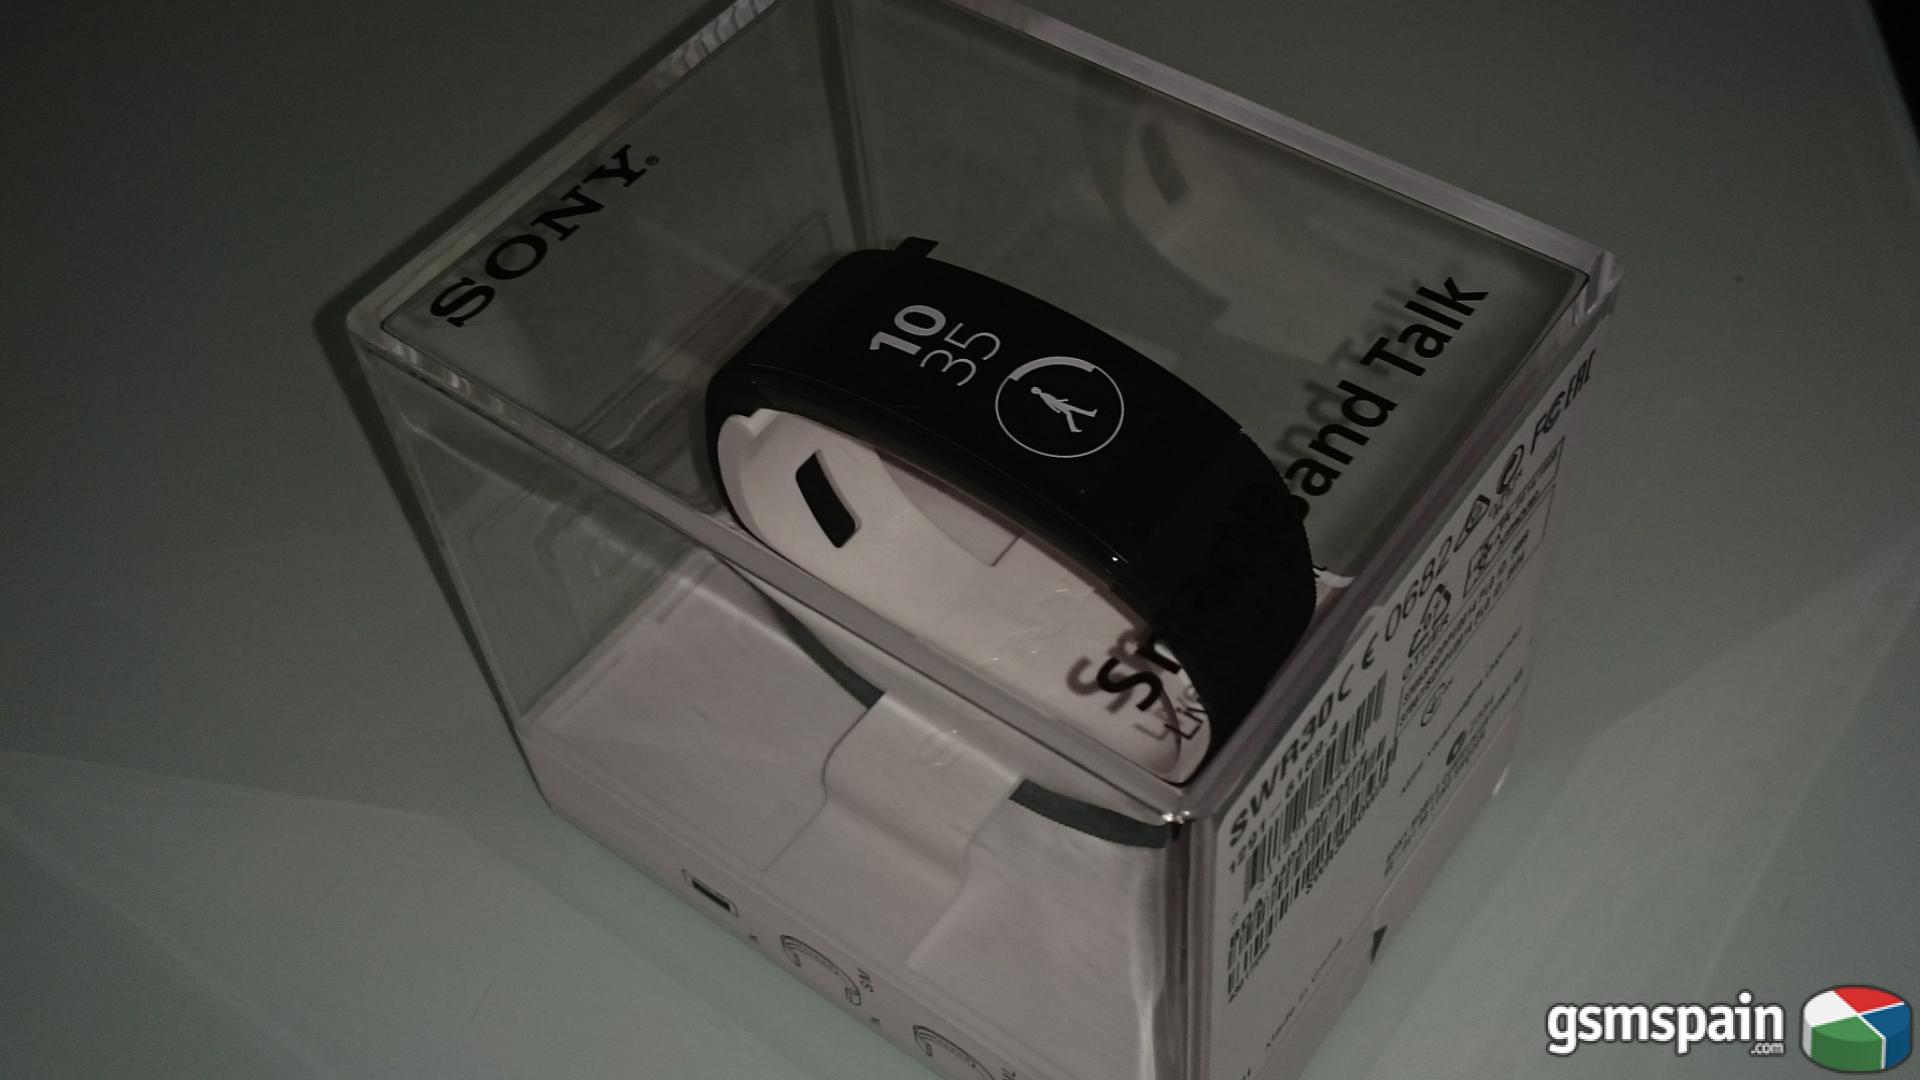 [VENDO] Smartband Sony sw30 negra 69 